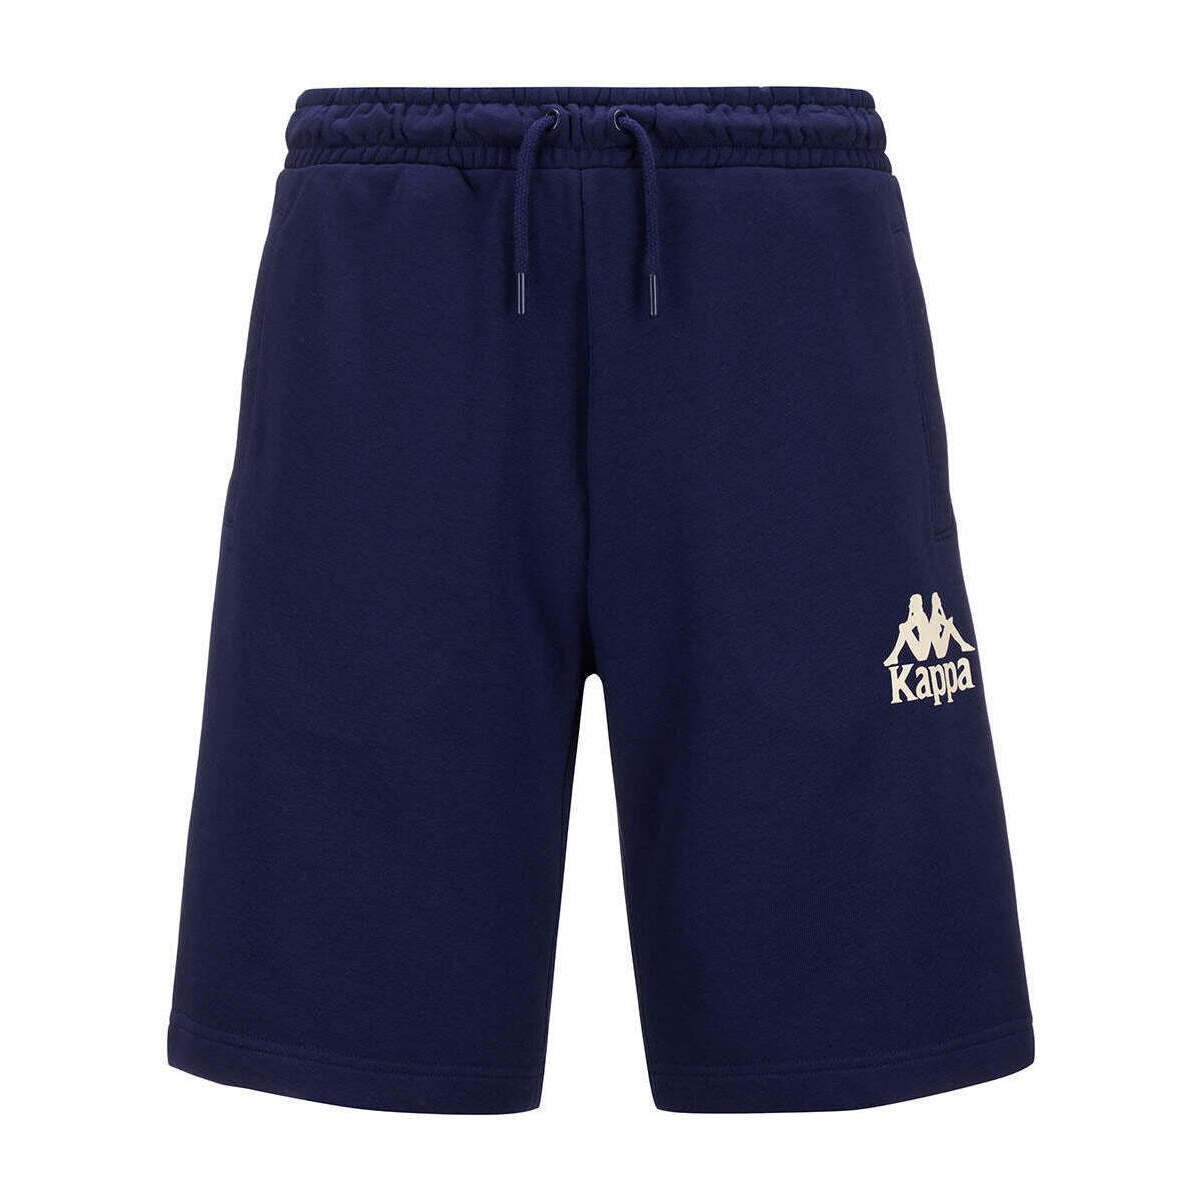 Vêtements Homme Shorts / Bermudas Kappa Short Authentic Uppsala 2 Bleu